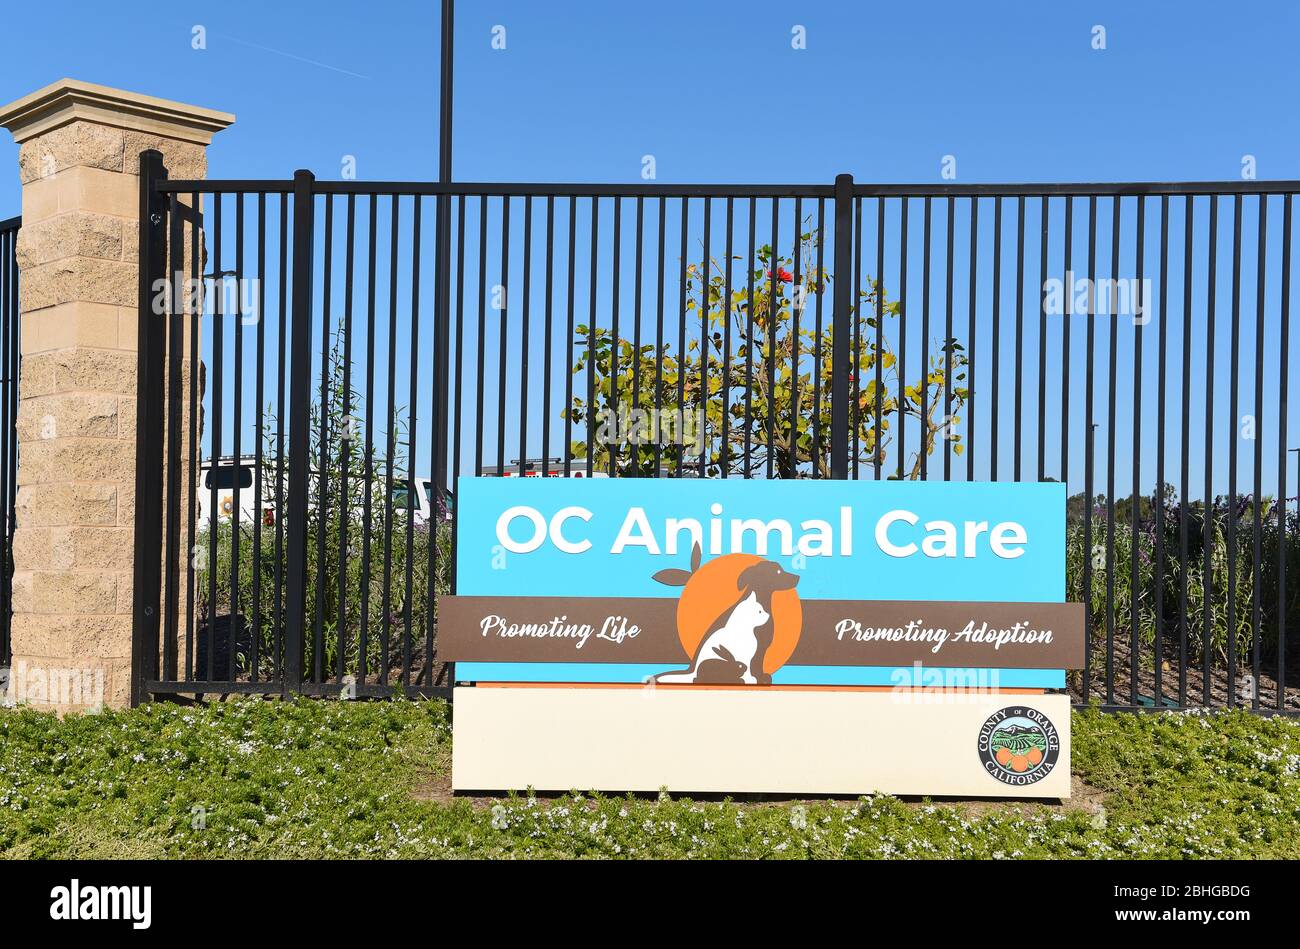 TUSTIN, KALIFORNIEN - 25. APRIL 2020: Zeichen für die OC Animal Care Einrichtung, ein Tierheim bietet Adoption und Veterinärdienste. Stockfoto